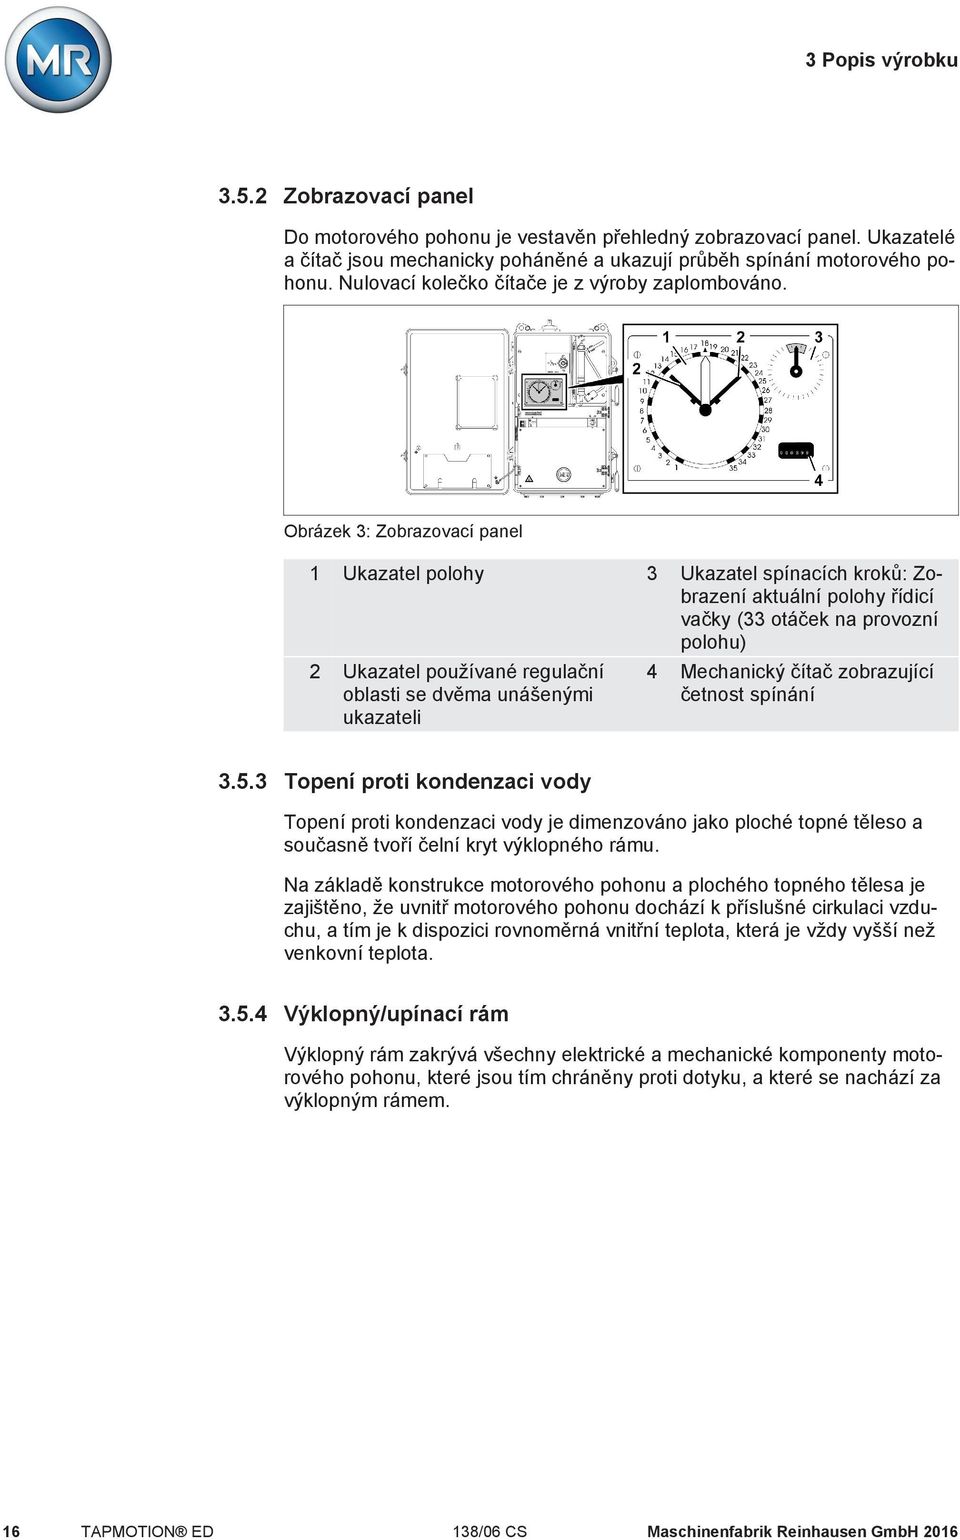 Obrázek 3: Zobrazovací panel 1 Ukazatel polohy 3 Ukazatel spínacích kroků: Zobrazení aktuální polohy řídicí vačky (33 otáček na provozní polohu) 2 Ukazatel používané regulační oblasti se dvěma